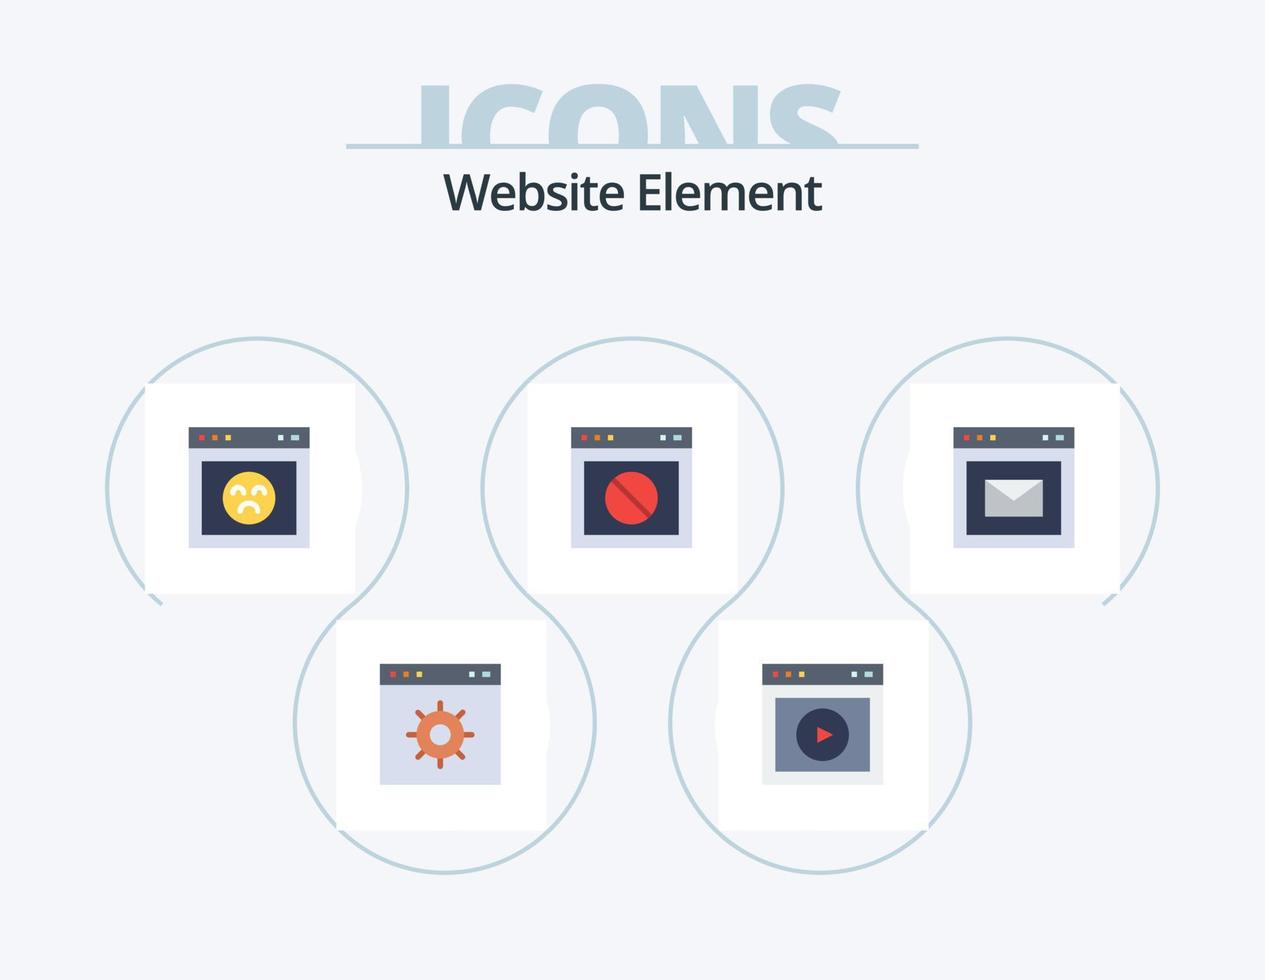 elemento del sitio web paquete de iconos planos 5 diseño de iconos. sitio web. advertencia. sitio web. detener. sitio web vector